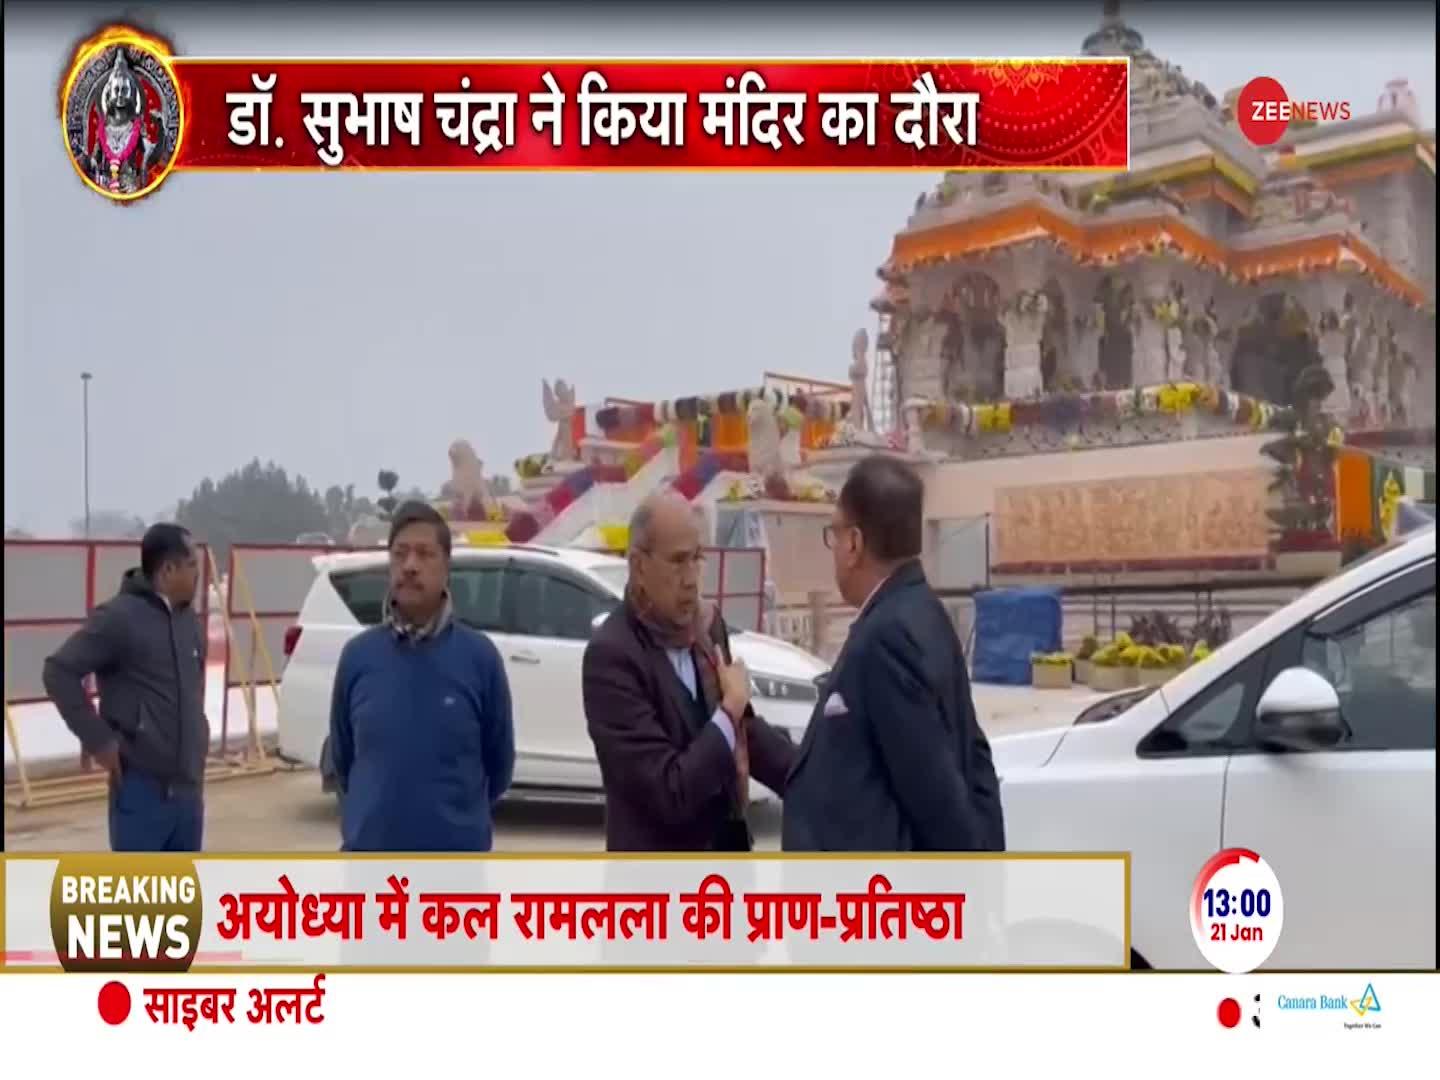 Subhash Chandra Exclusive: डॉ सुभाष चंद्रा ने प्राण-प्रतिष्ठा से पहले किया राम मंदिर का दौरा